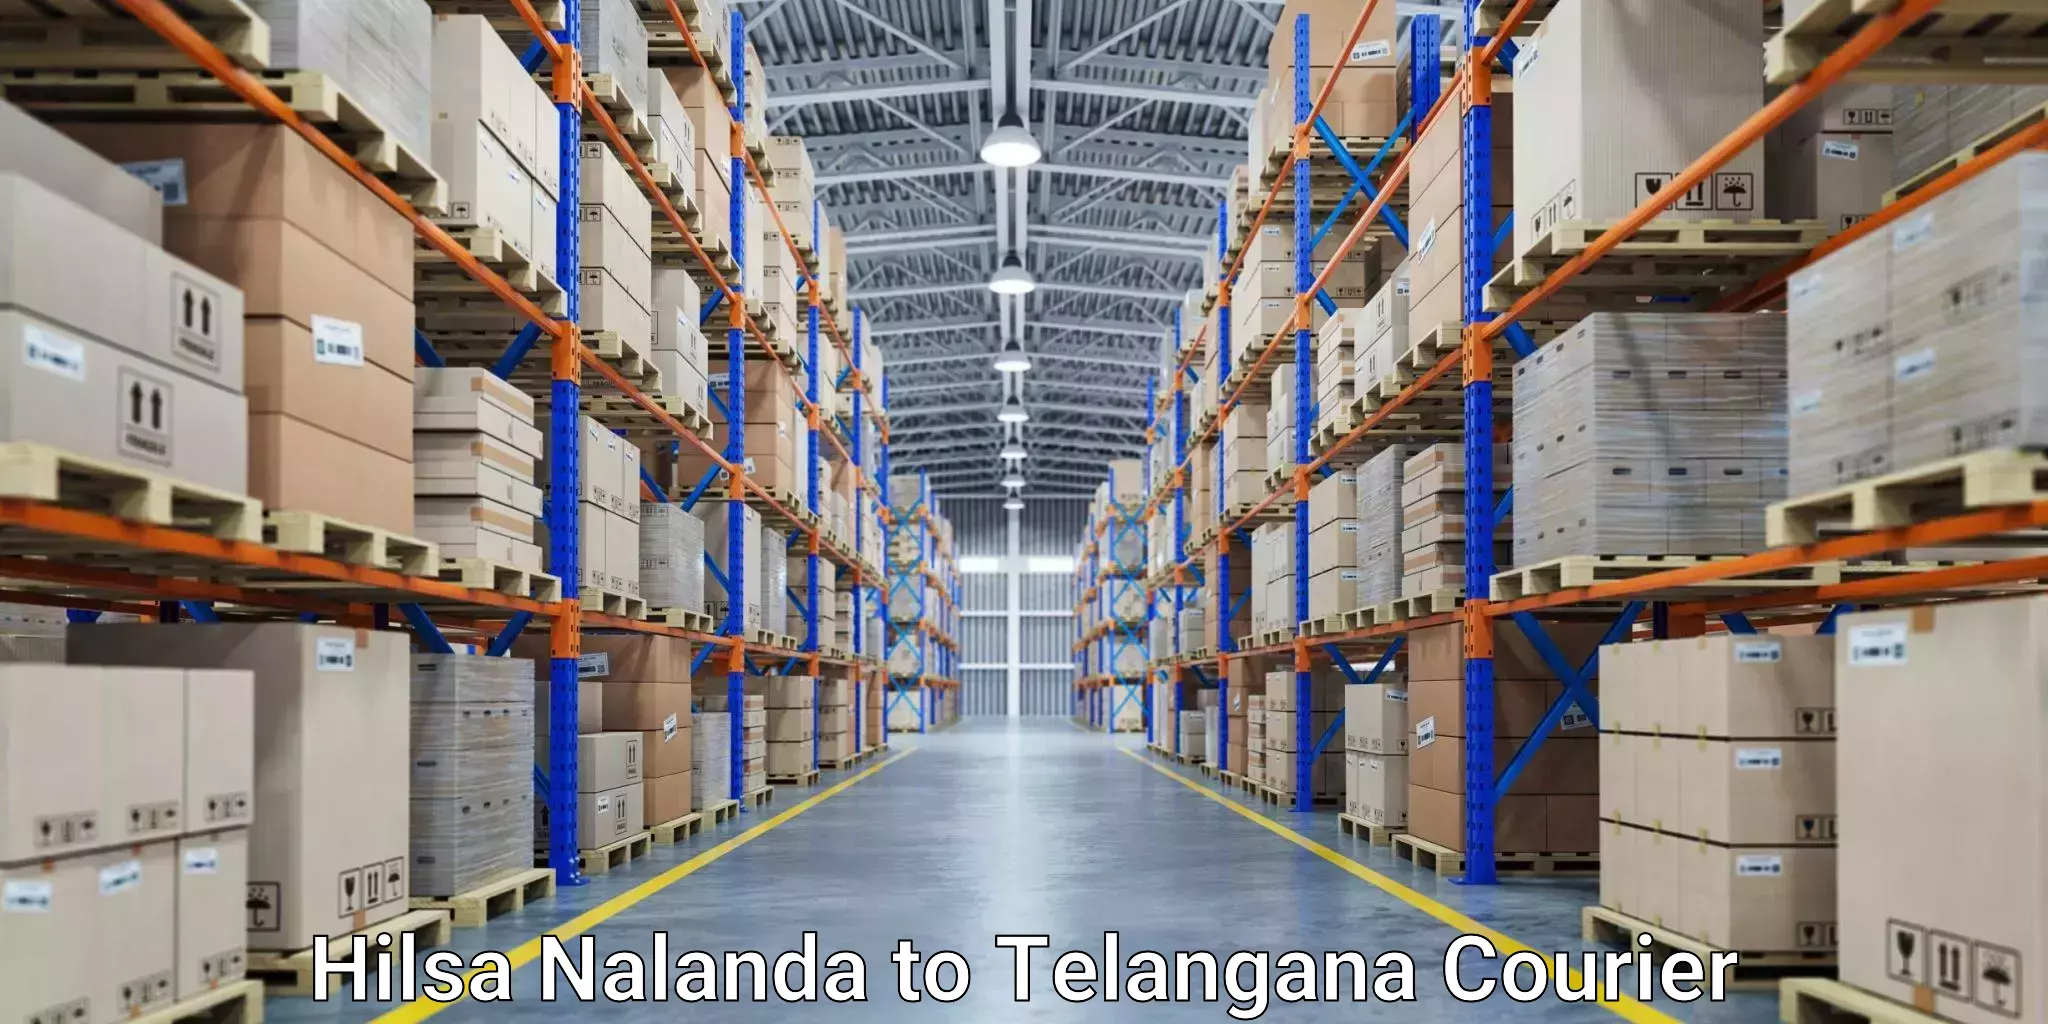 Fast delivery service Hilsa Nalanda to Yerrupalem